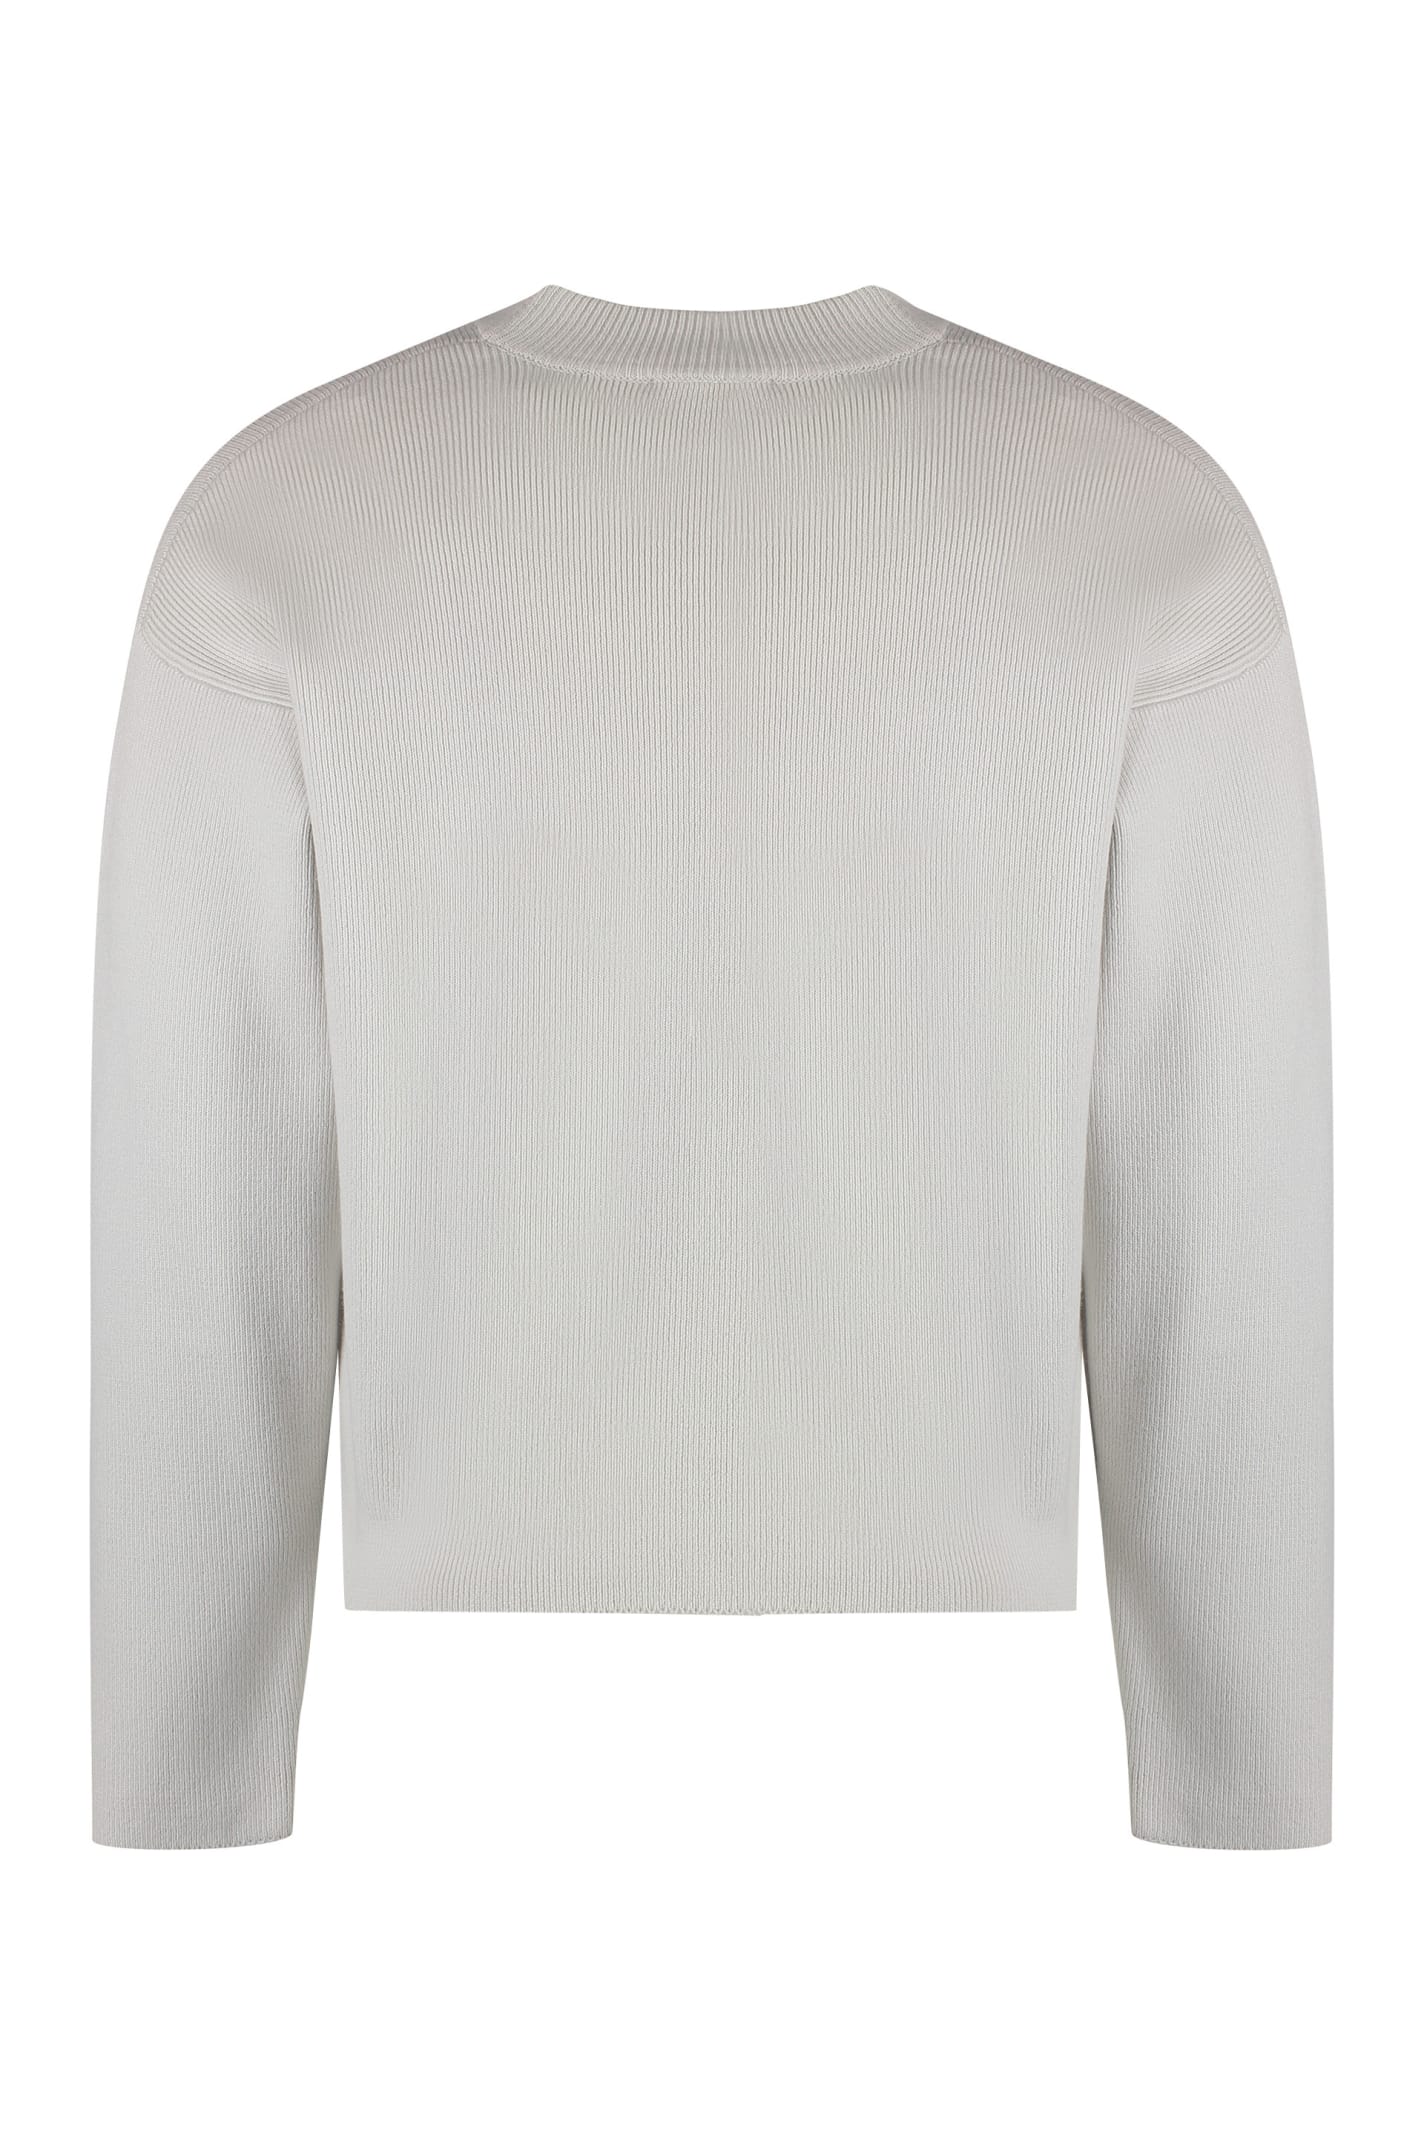 Shop Ami Alexandre Mattiussi Cotton Blend Crew-neck Sweater In Ecru